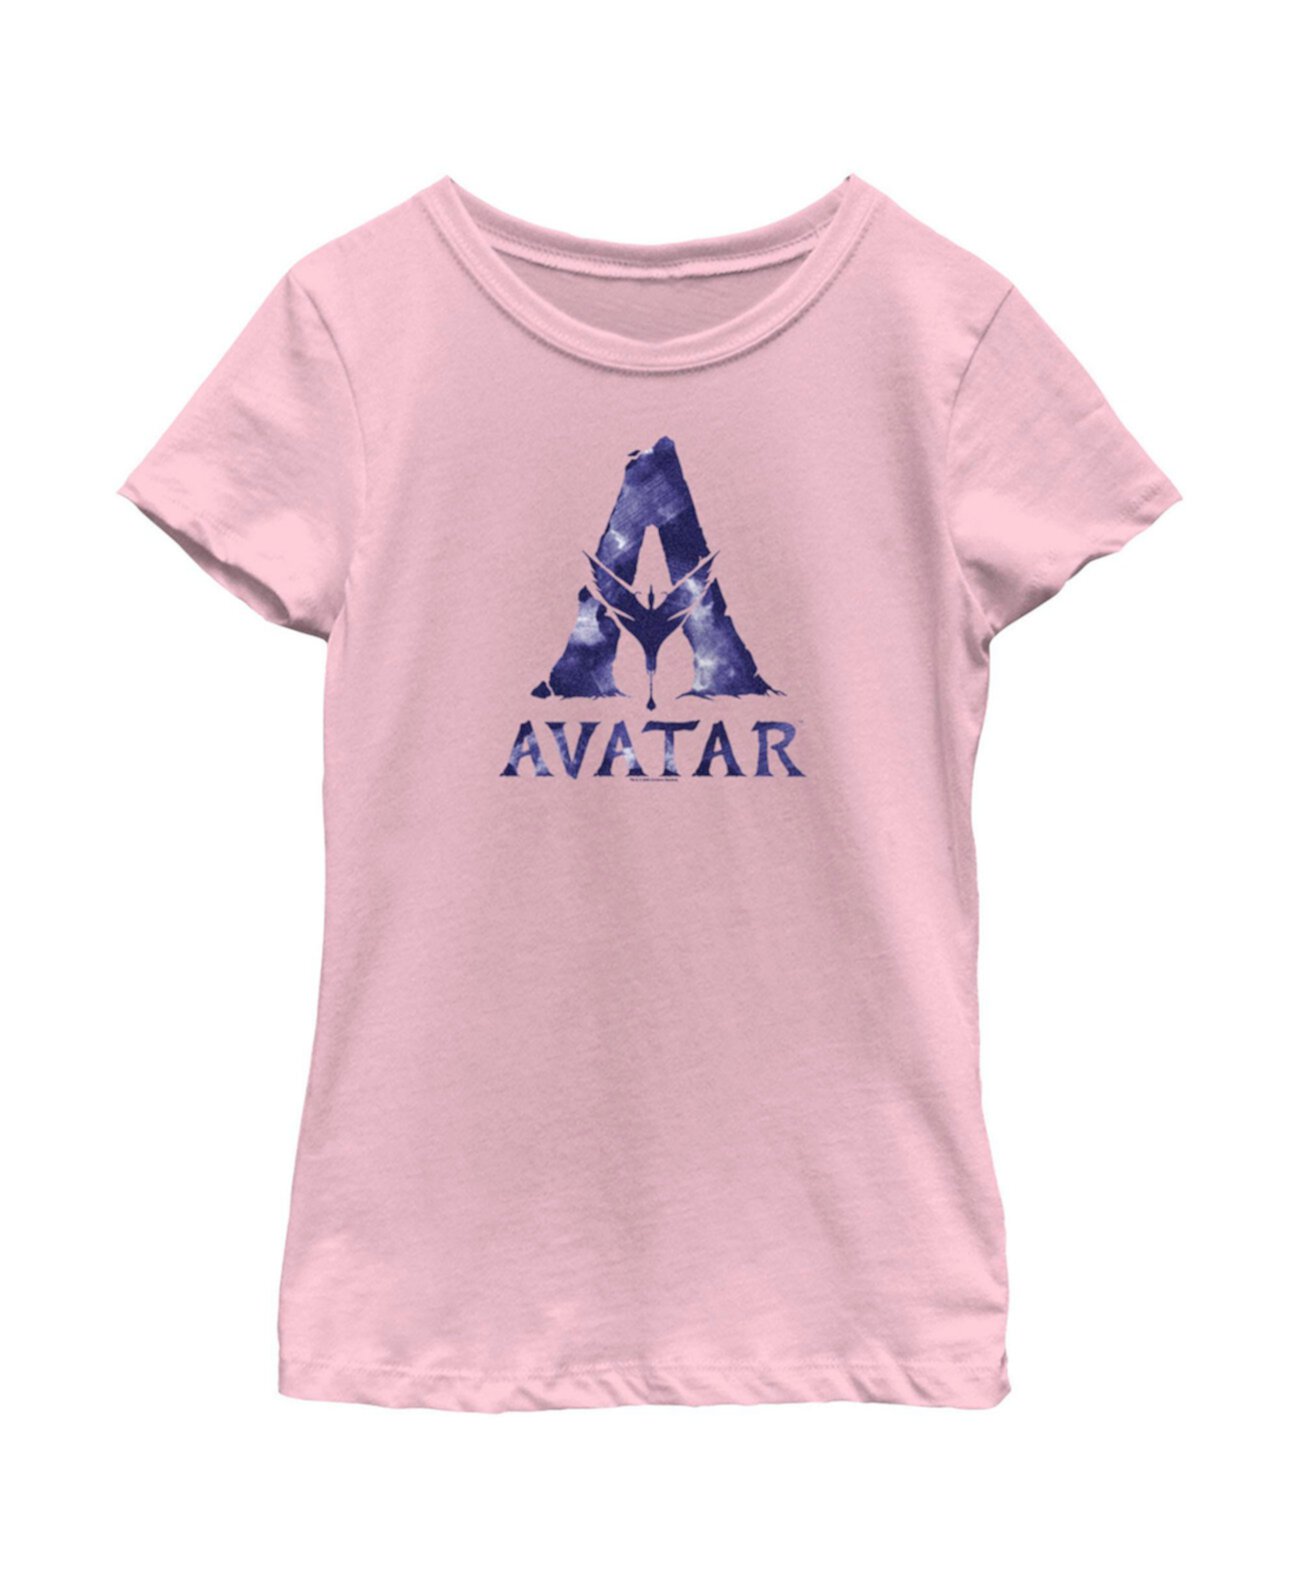 Аватар для девочек, акварель, детская футболка с логотипом 20th Century Fox